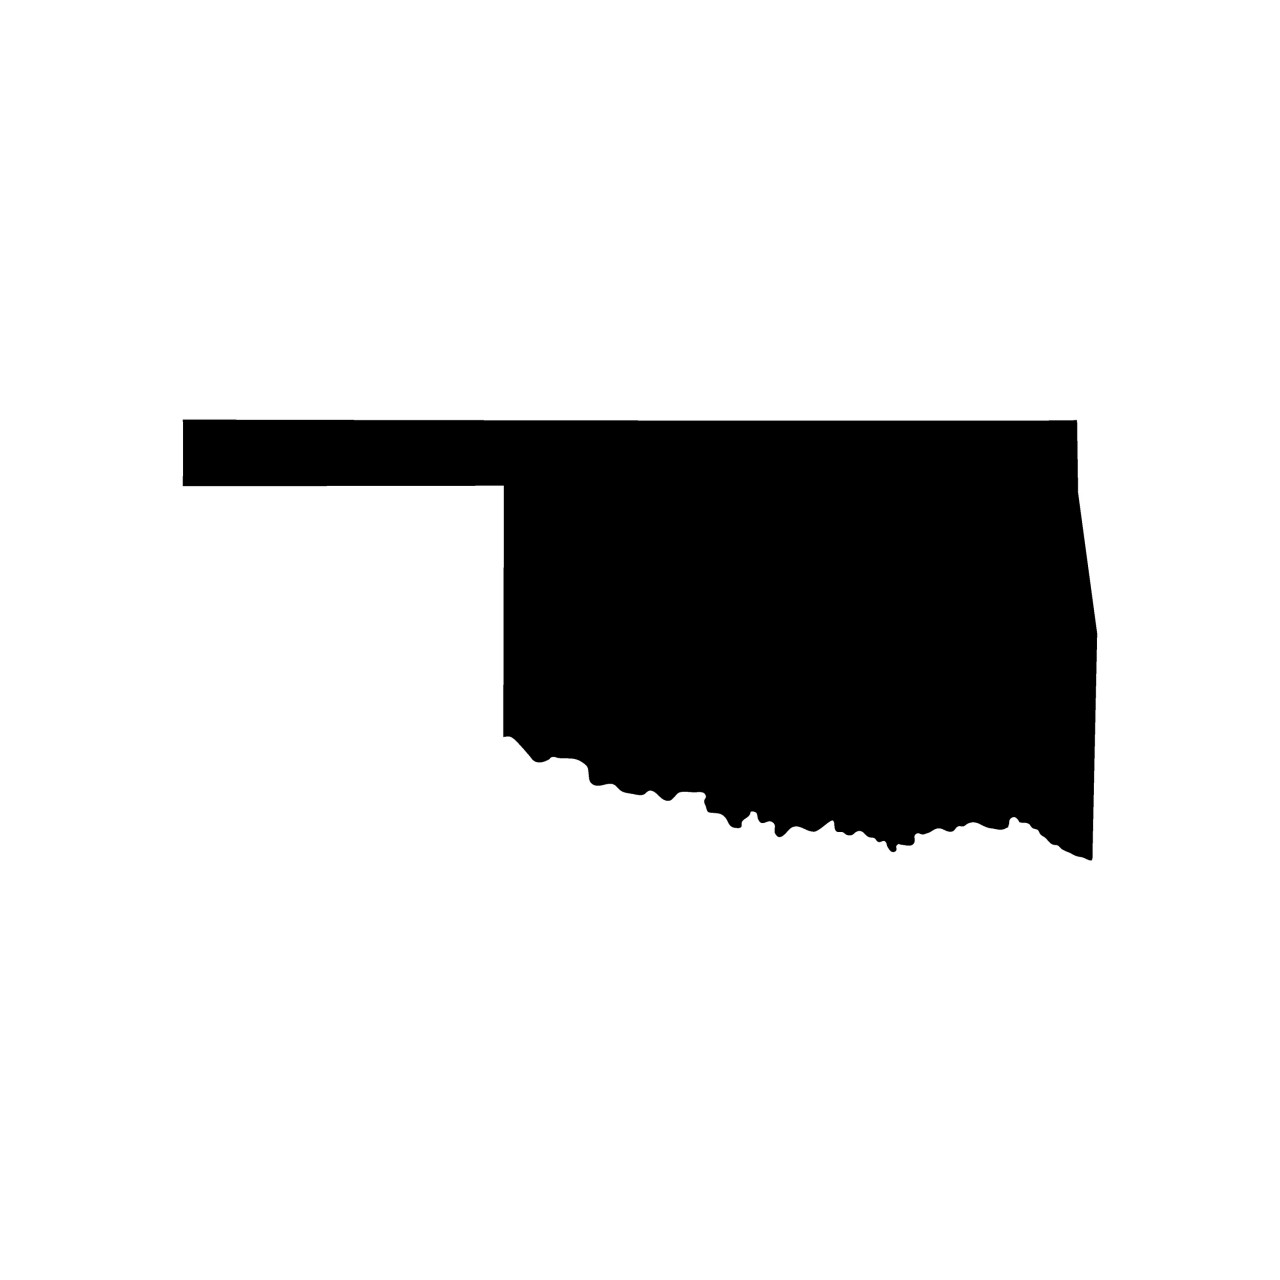 Oklahoma slips in pro-life ranking